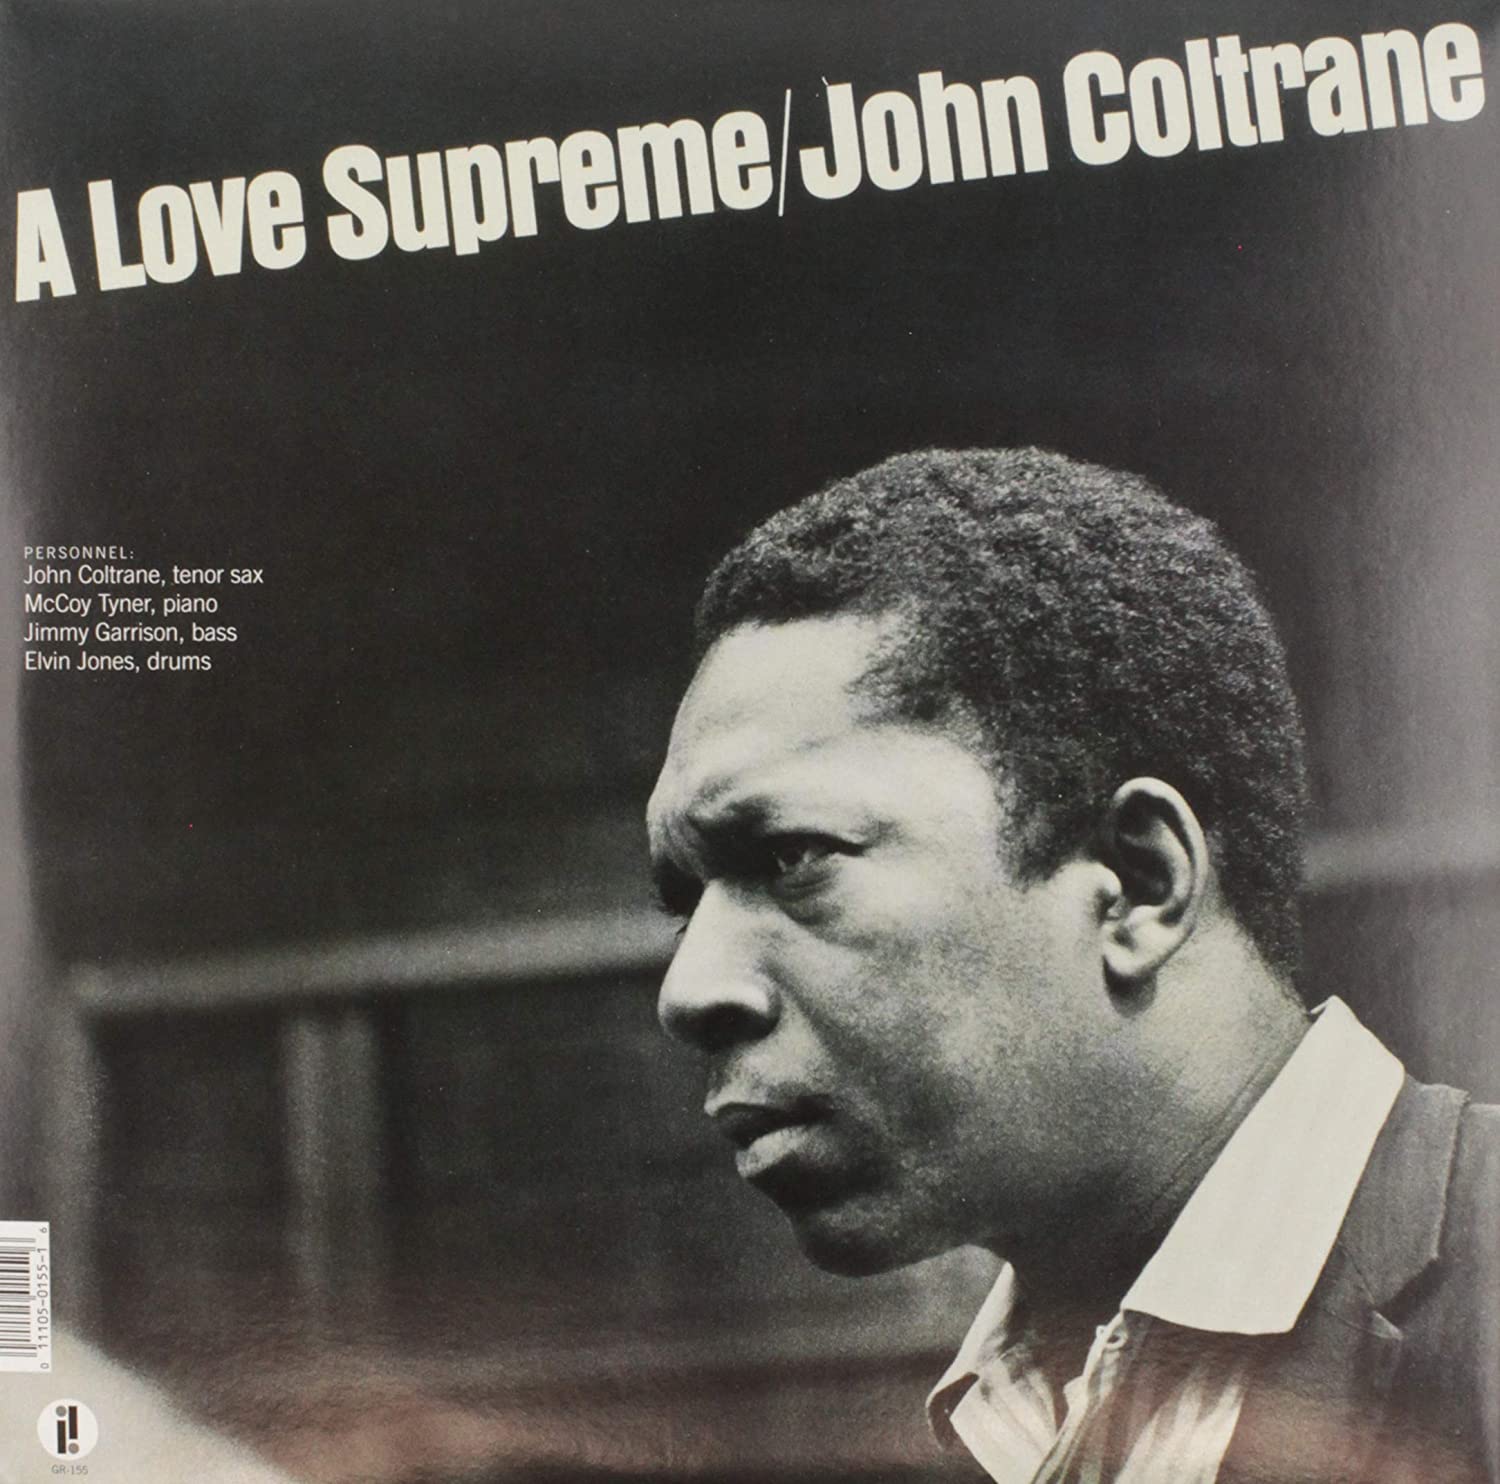 John Coltrane "A love supreme" LP